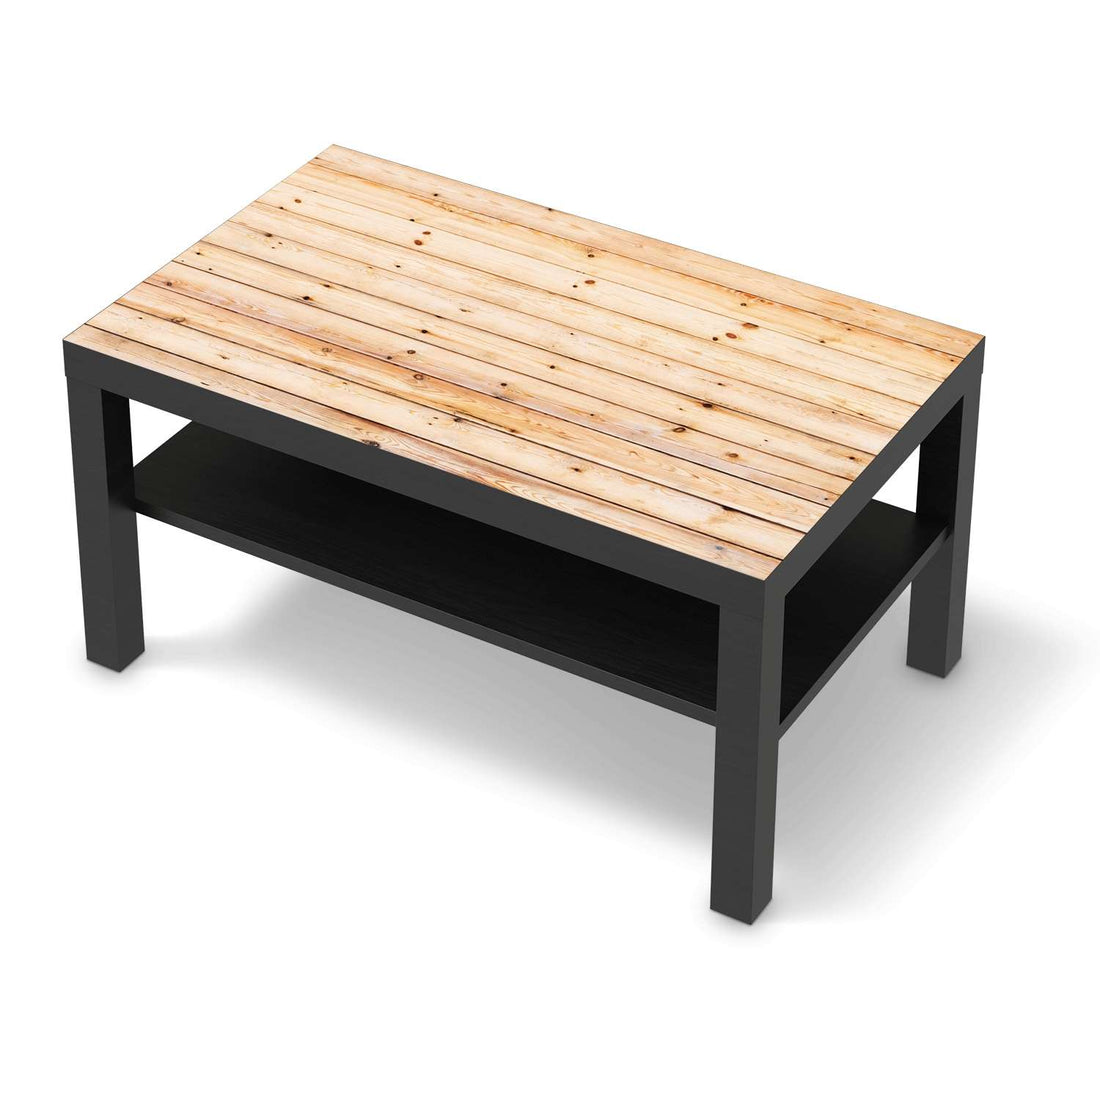 Möbelfolie Bright Planks - IKEA Lack Tisch 90x55 cm - schwarz